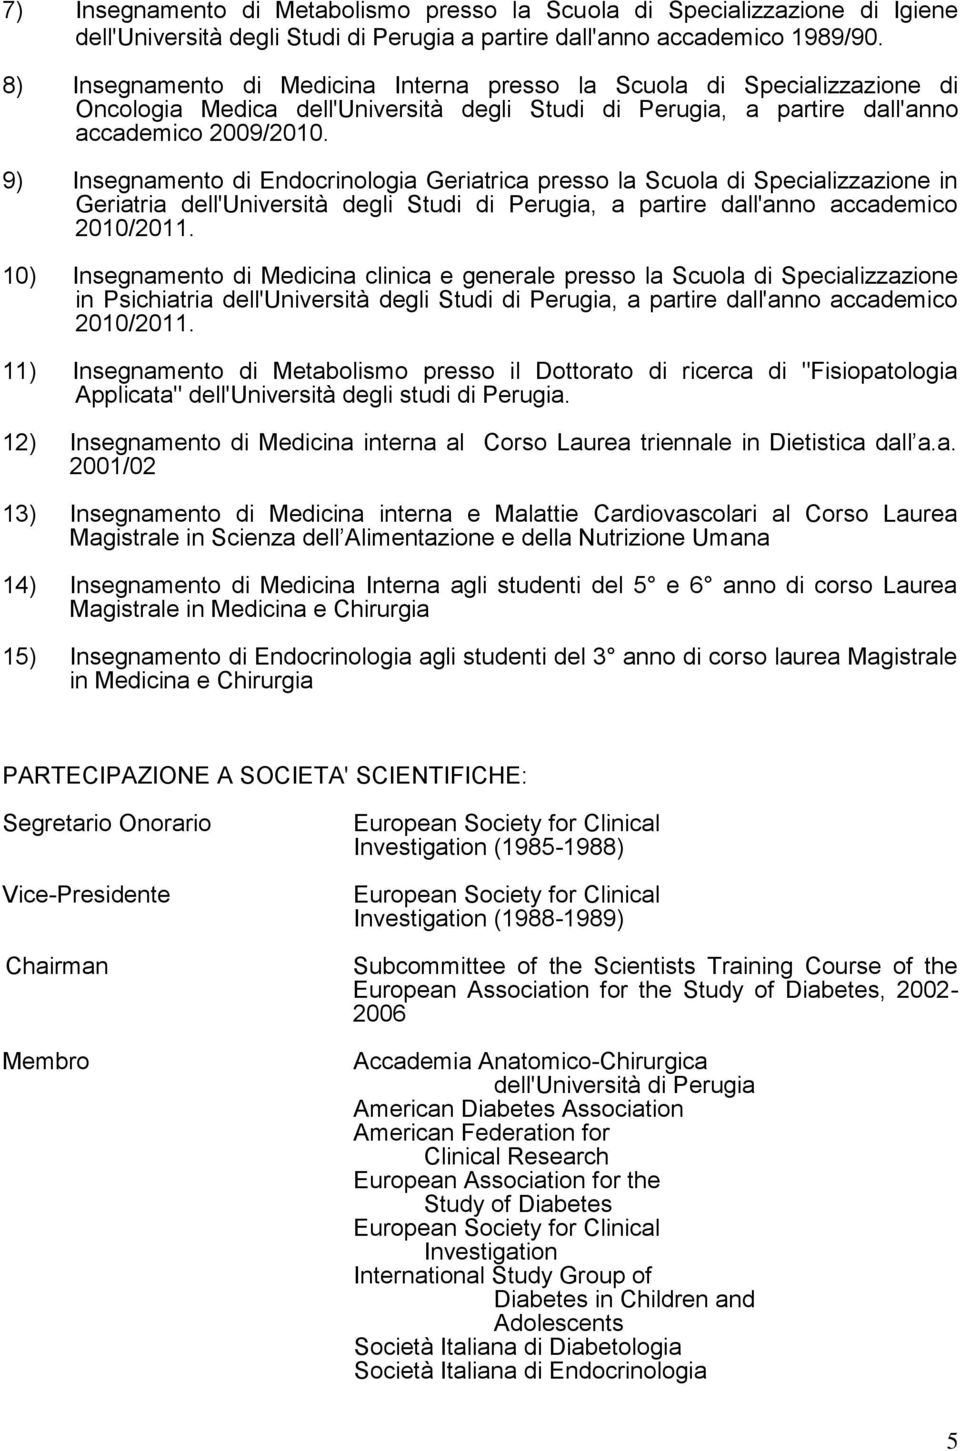 9) Insegnamento di Endocrinologia Geriatrica presso la Scuola di Specializzazione in Geriatria dell'università degli Studi di Perugia, a partire dall'anno accademico 2010/2011.